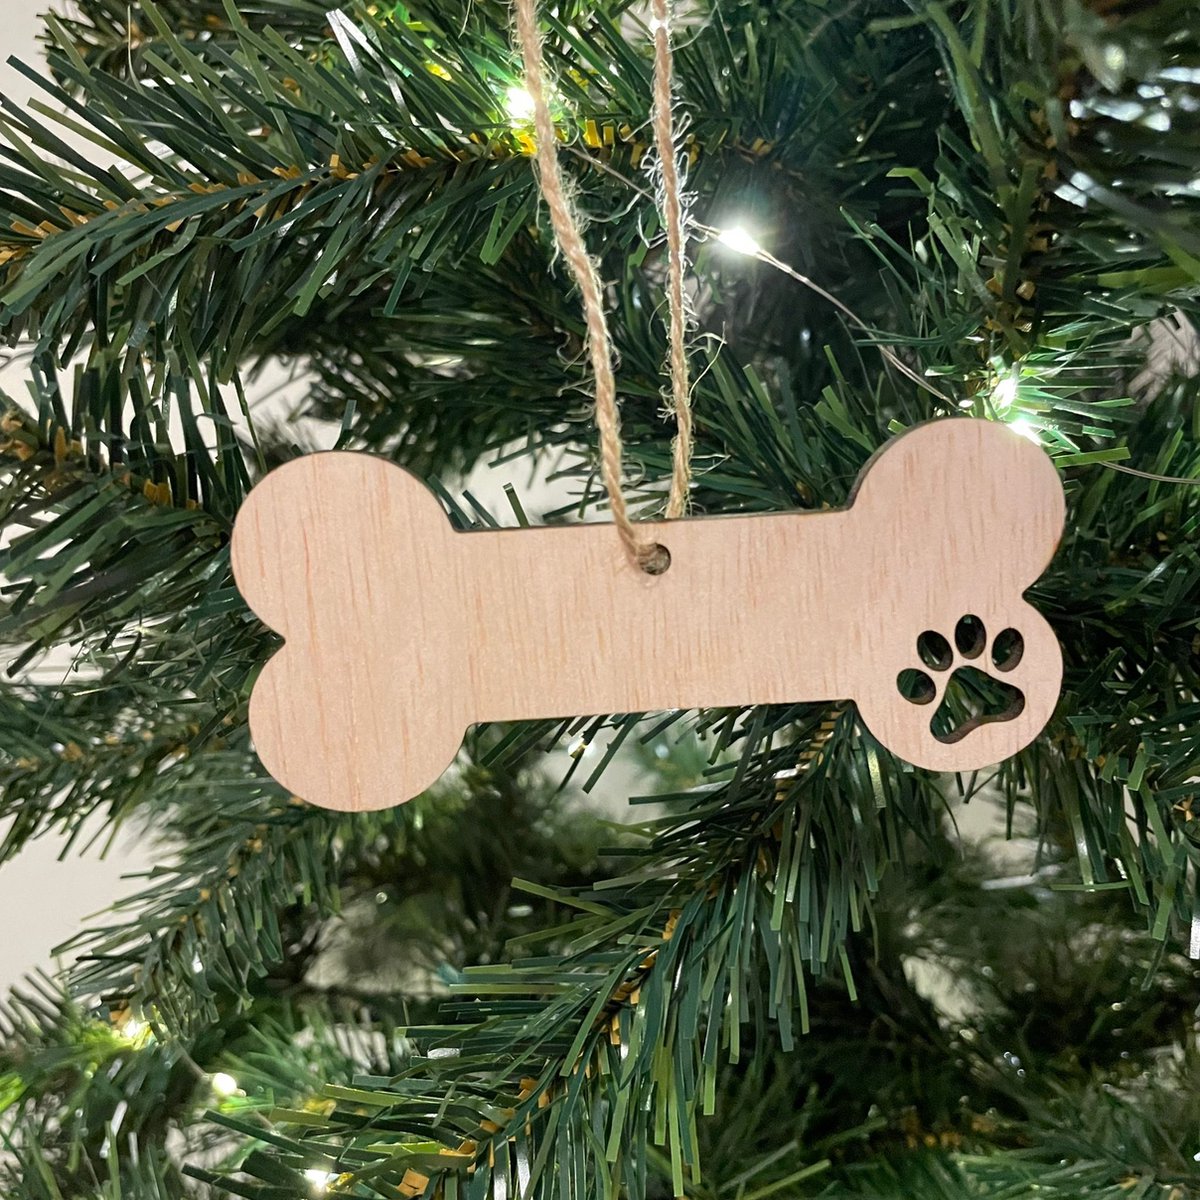 Houten Kersthanger Hondenbot 10 stuks - Kerst - Kerstbal - Hout - Kerstboom - Houten Decoratie - Kerstmis - Hond - Hondenbot - Pootafdruk - Kerstdecoratie - Kerst ornament - Versiering